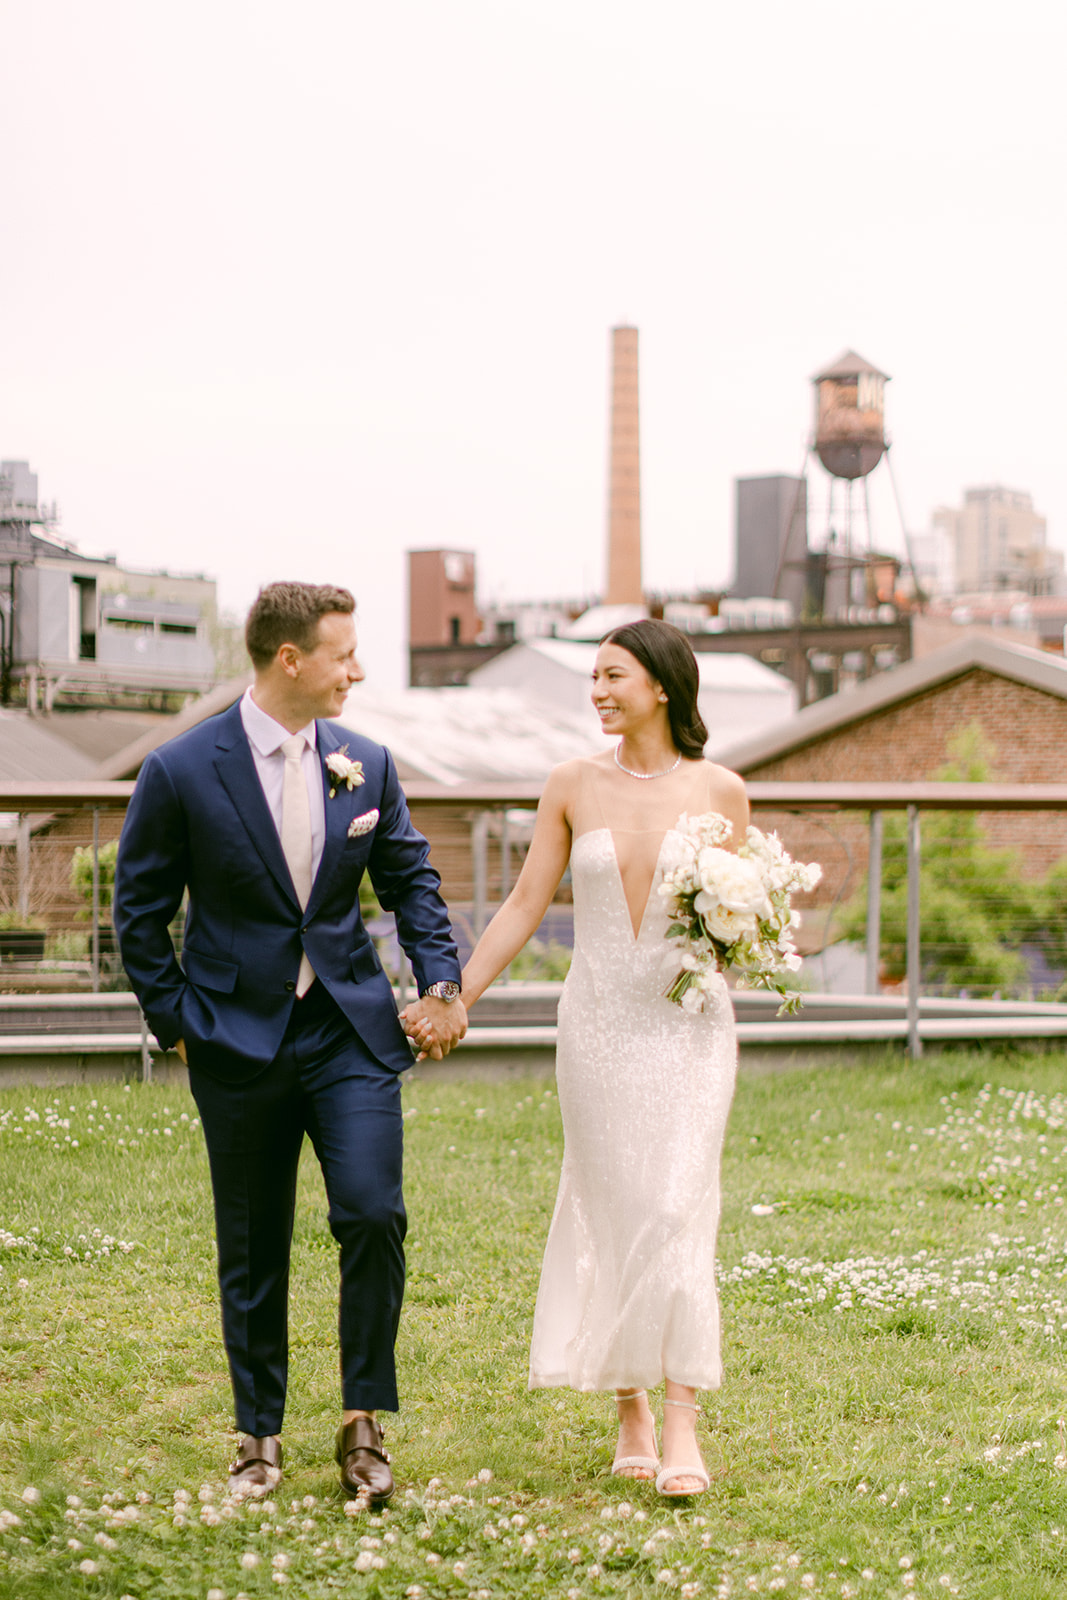  Brooklyn Rooftop Wedding wythe hotel